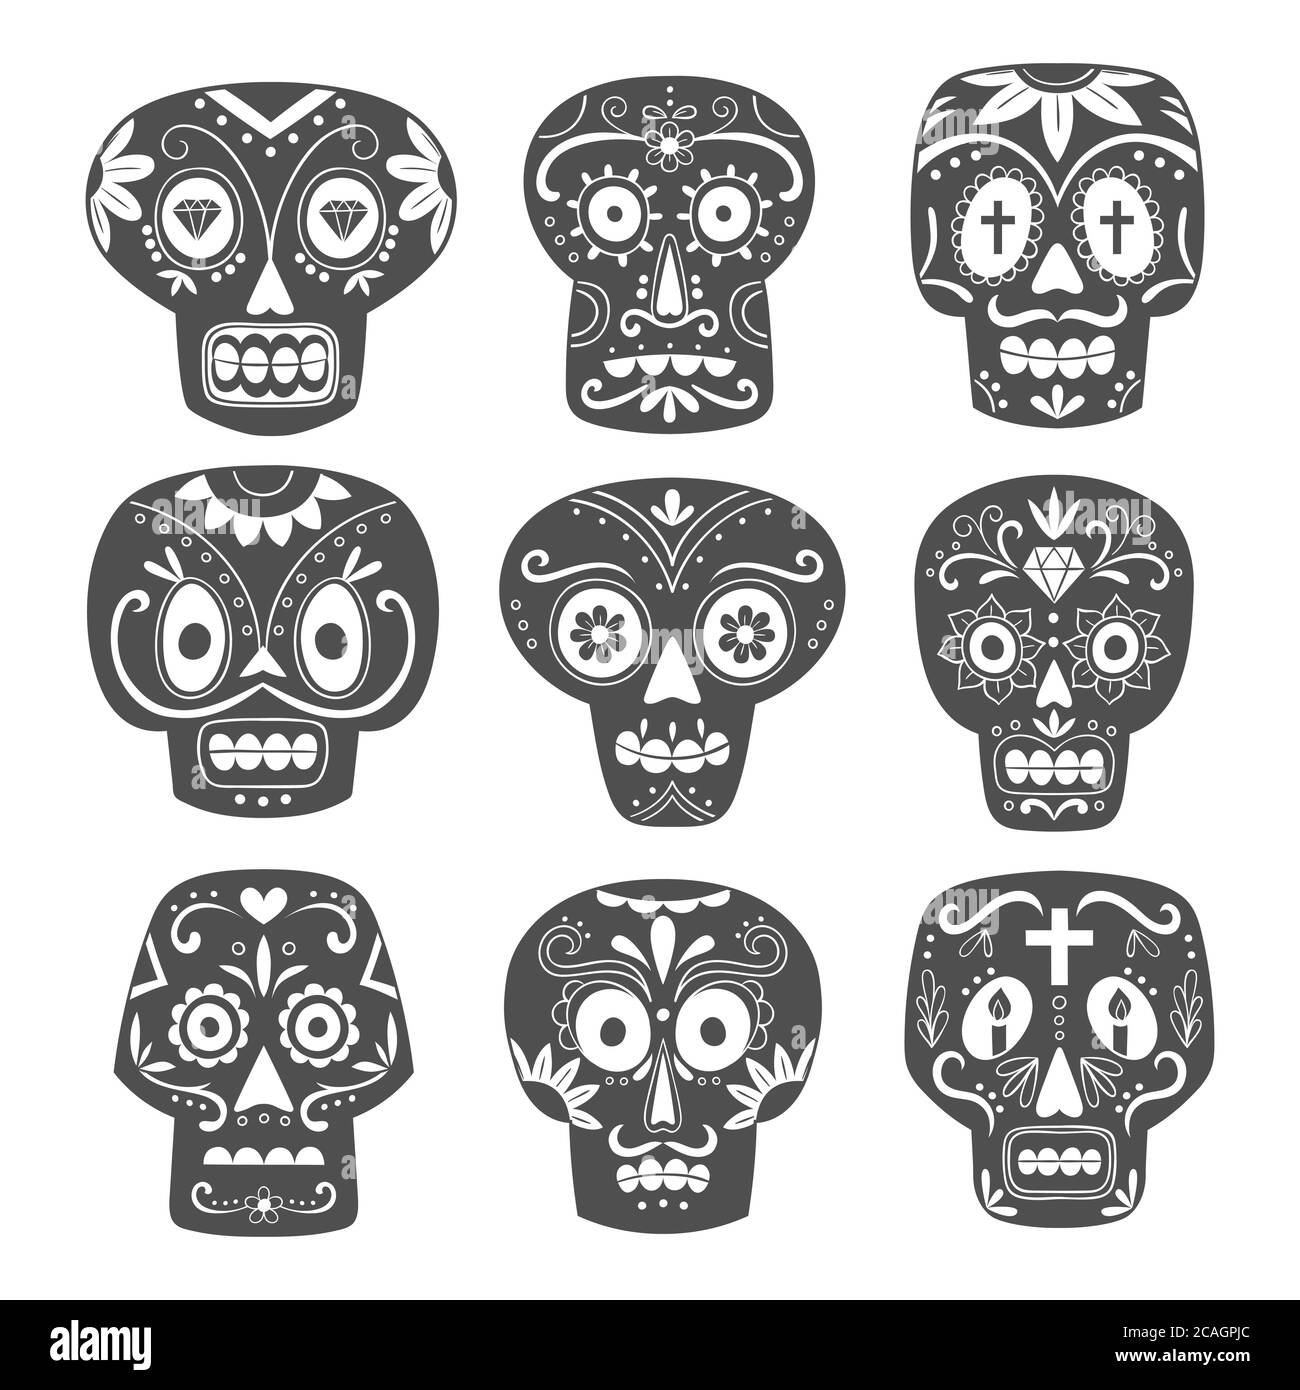 Mexikanischer Totenkopf-Set. Niedliche schwarze und weiße Zucker Schädel im Cartoon-Stil. Vektorgrafik. Stock Vektor